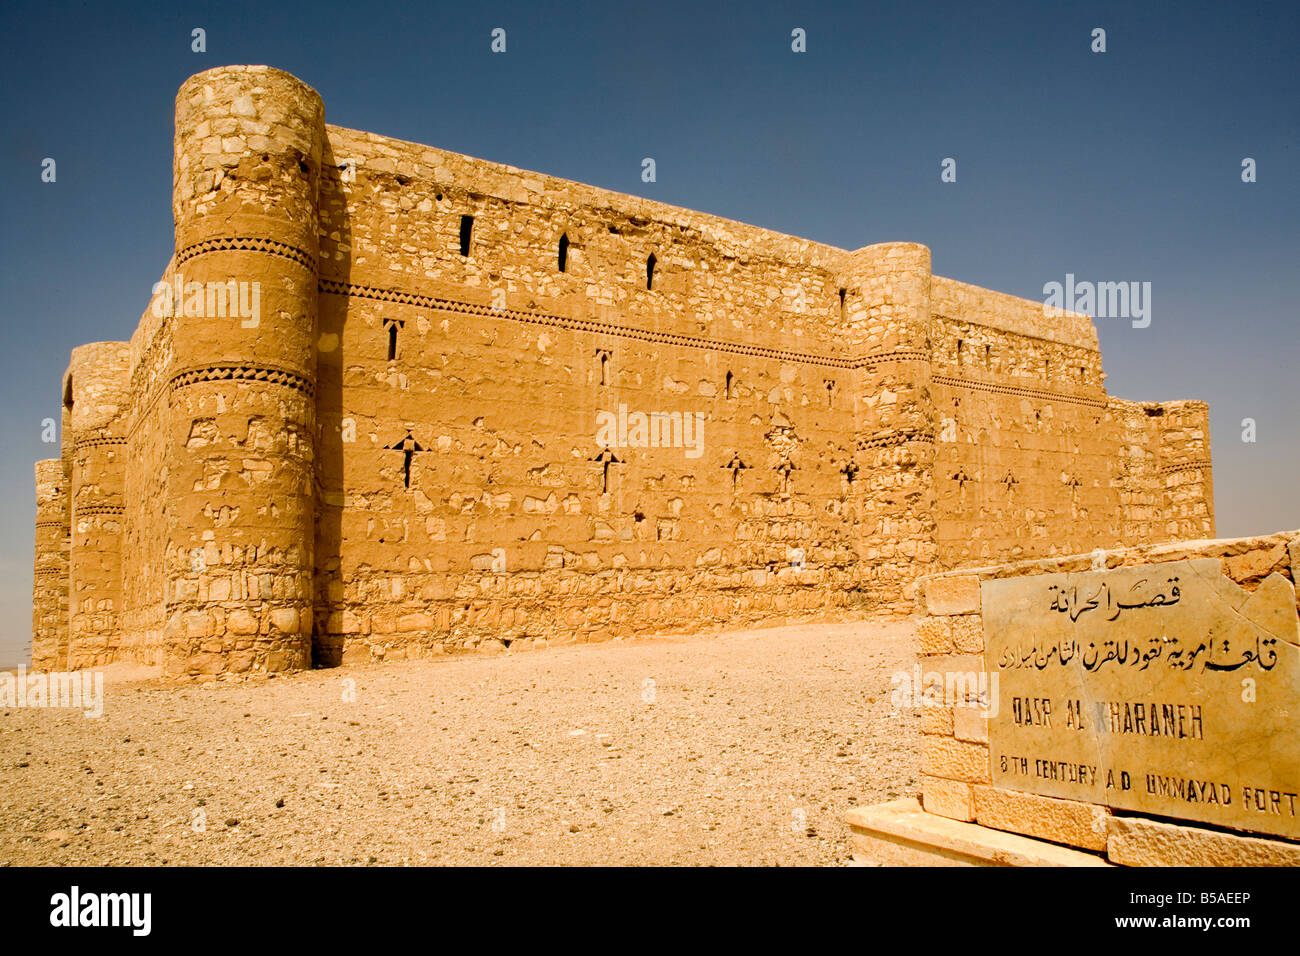 Karanneh desert fort Jordan Middle East Stock Photo